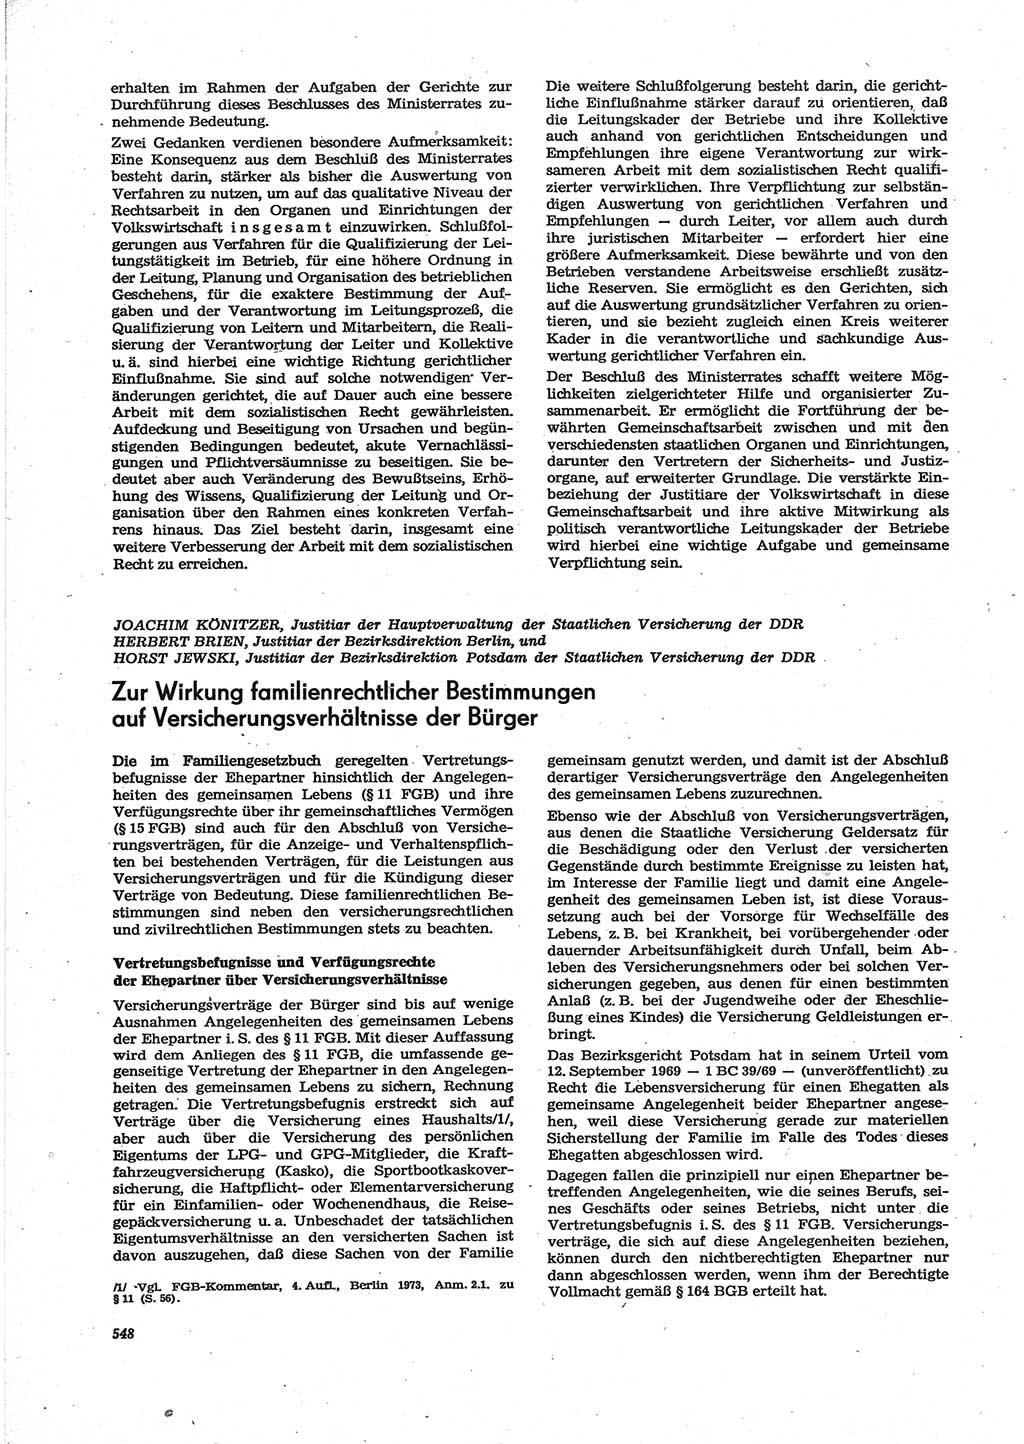 Neue Justiz (NJ), Zeitschrift für Recht und Rechtswissenschaft [Deutsche Demokratische Republik (DDR)], 28. Jahrgang 1974, Seite 548 (NJ DDR 1974, S. 548)